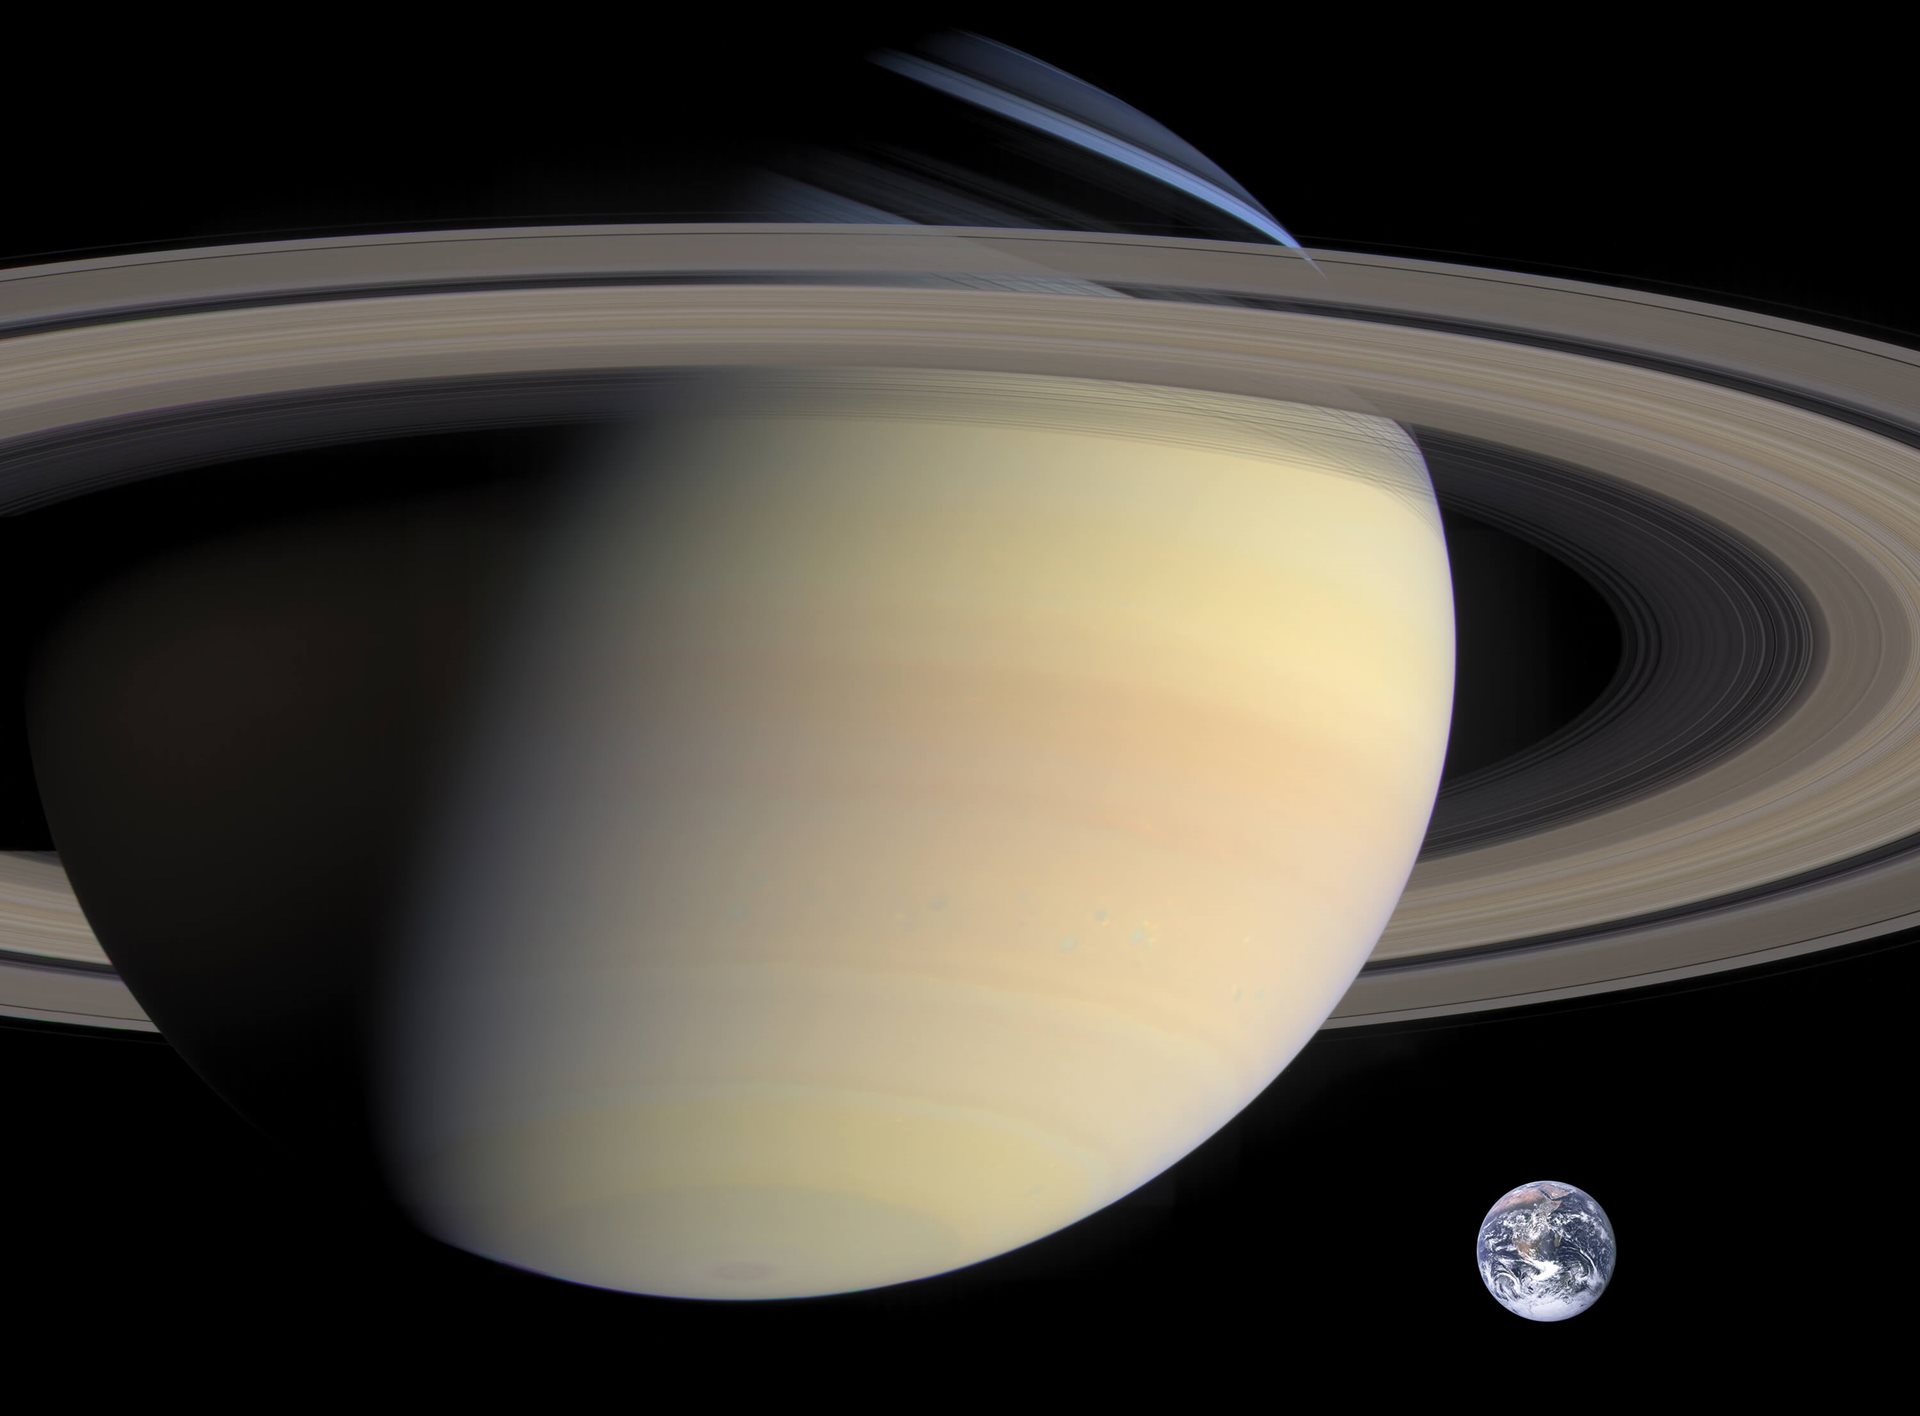 Saturno tankis labai nedidelis